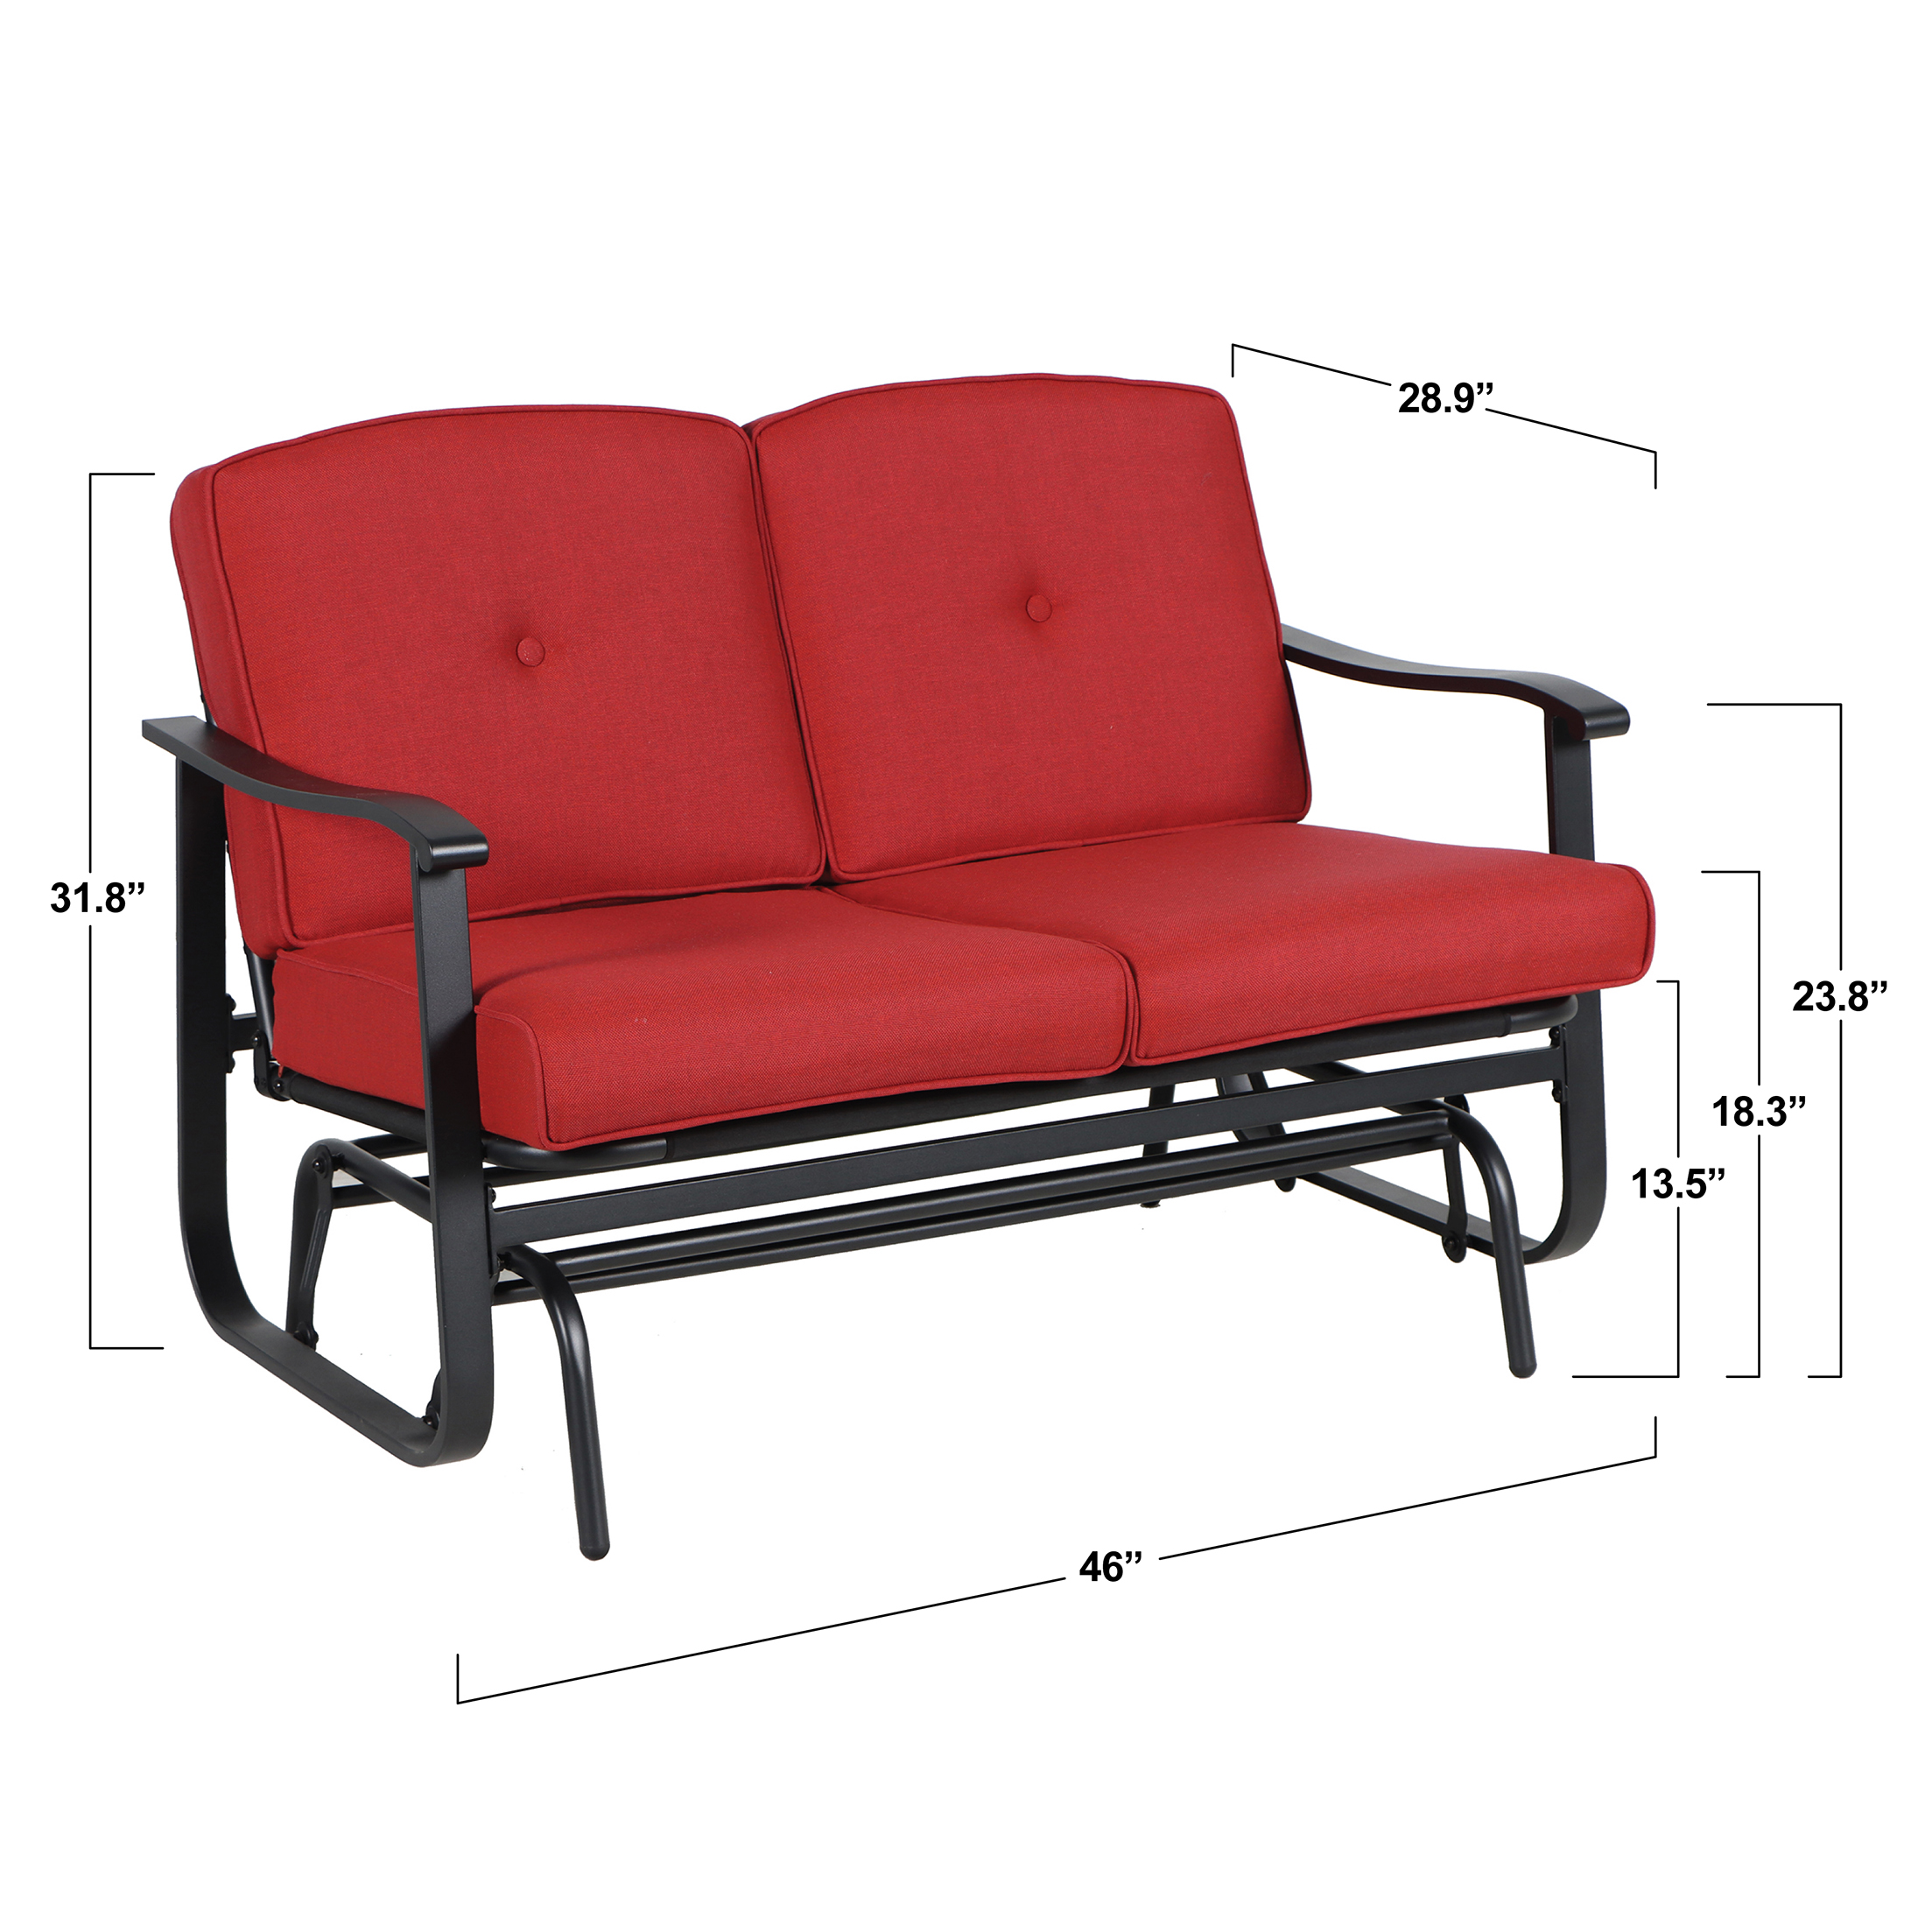 Mainstays Belden Park Cushion Steel Outdoor Glider Bench - Red/Black ...